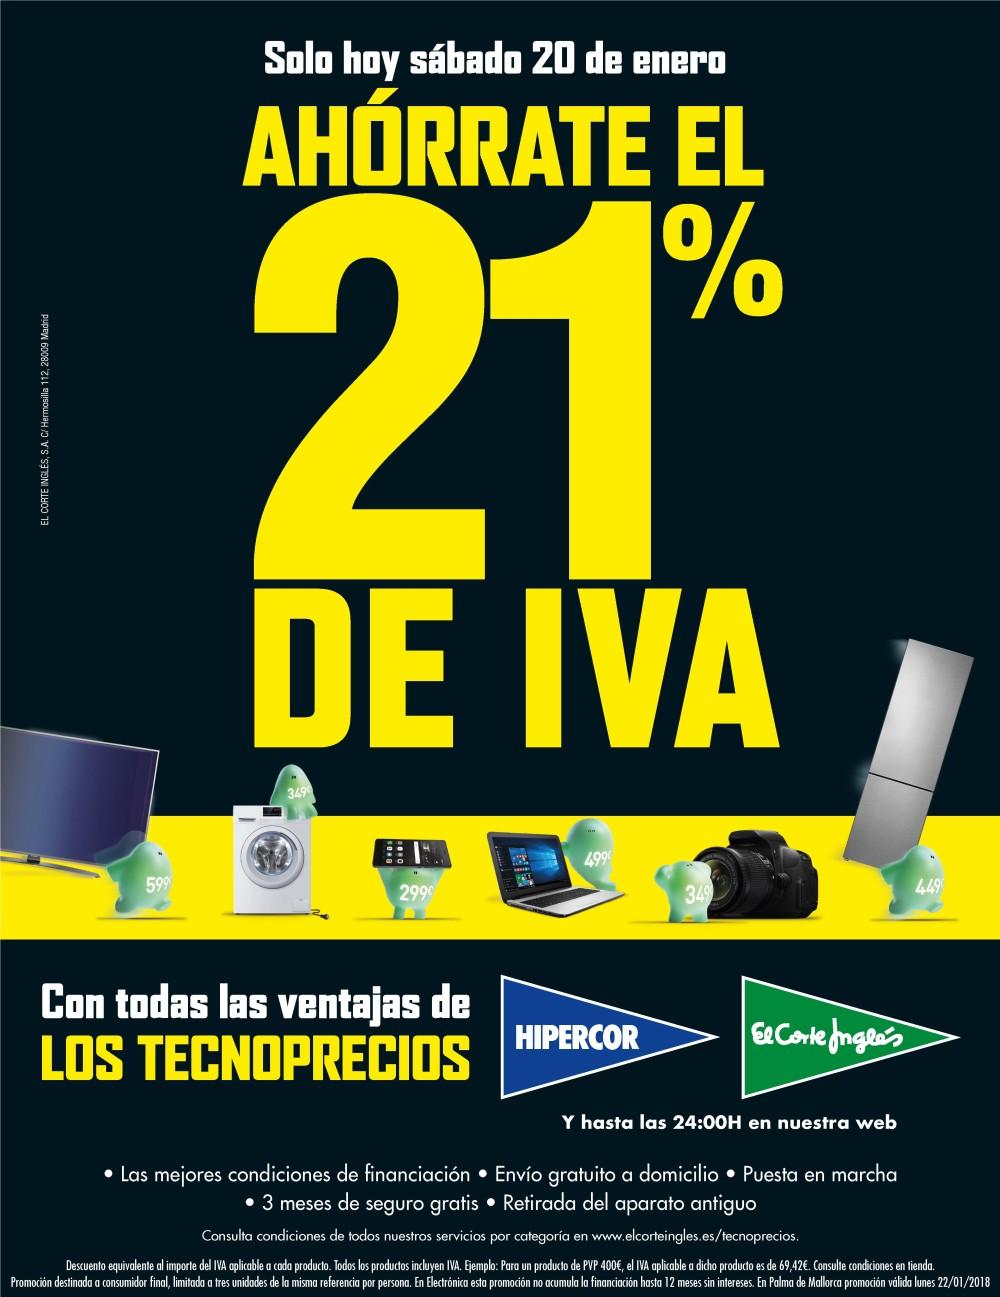 El Corte Inglés e lanzan mañana una campaña de ahorro del 21% en electrónica y electrodomésticos - Castellon Información